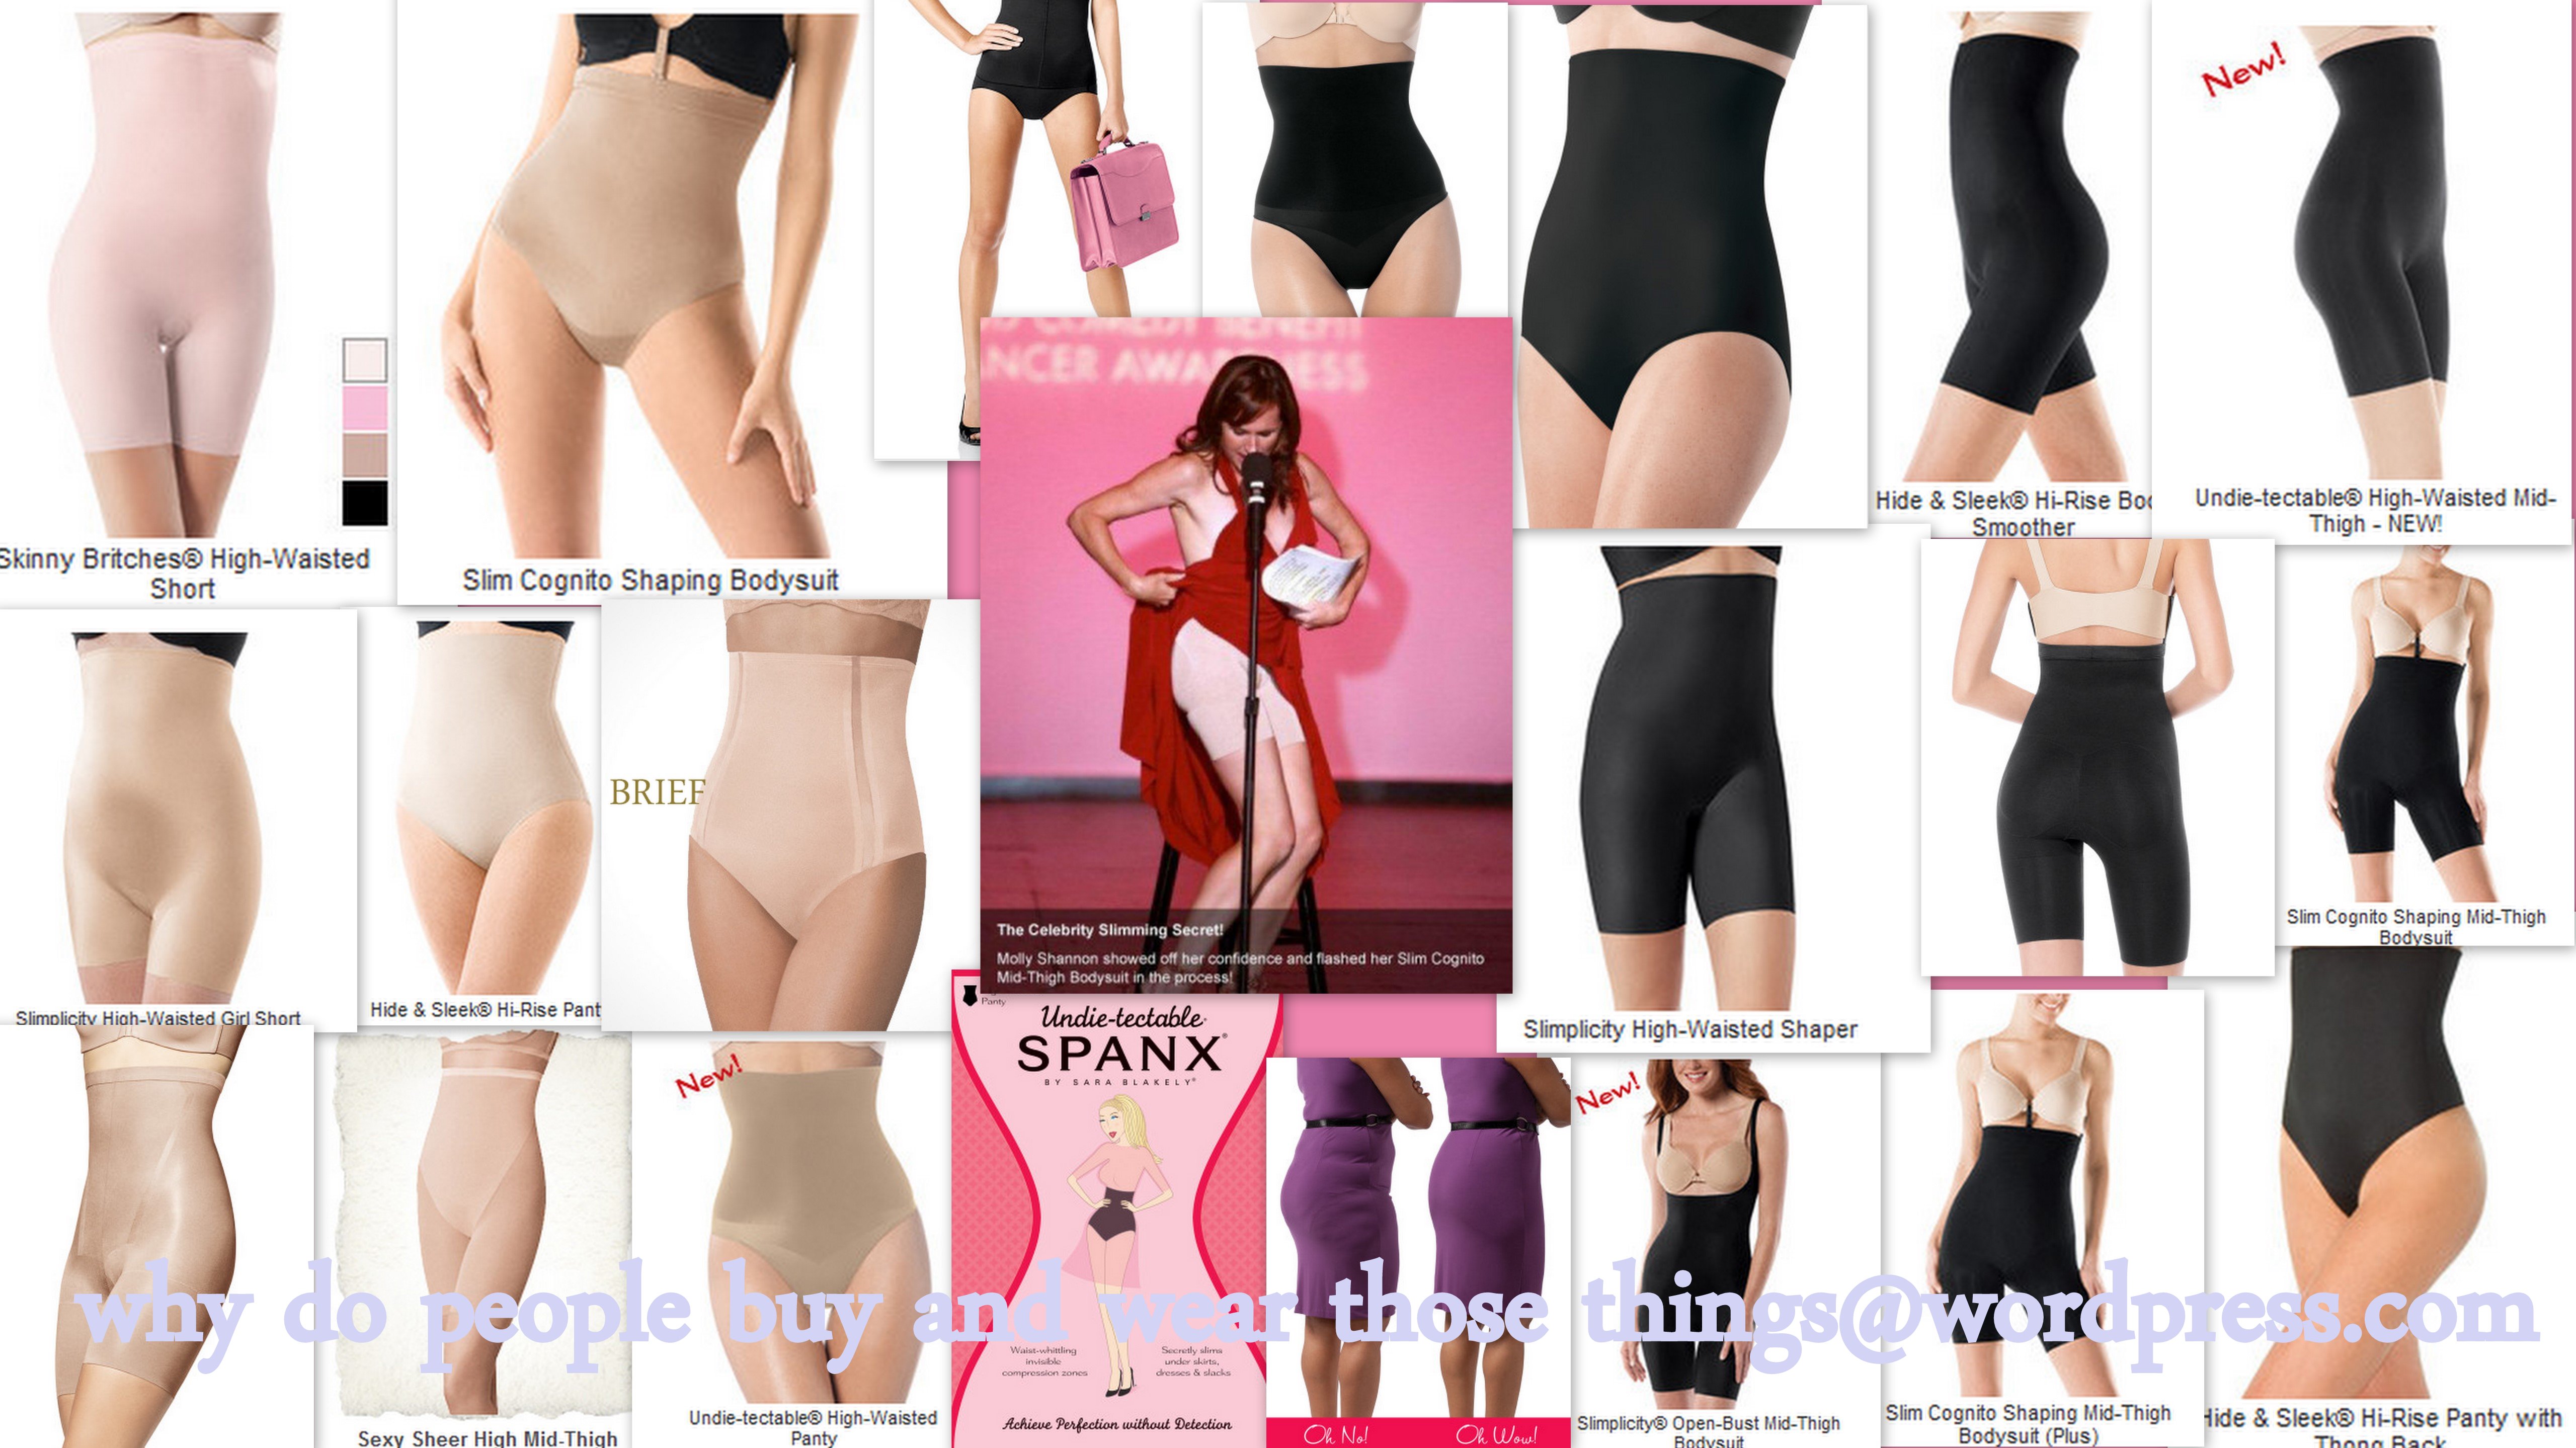 Spanx Slim Cognito, Women's Fashion, New Undergarments